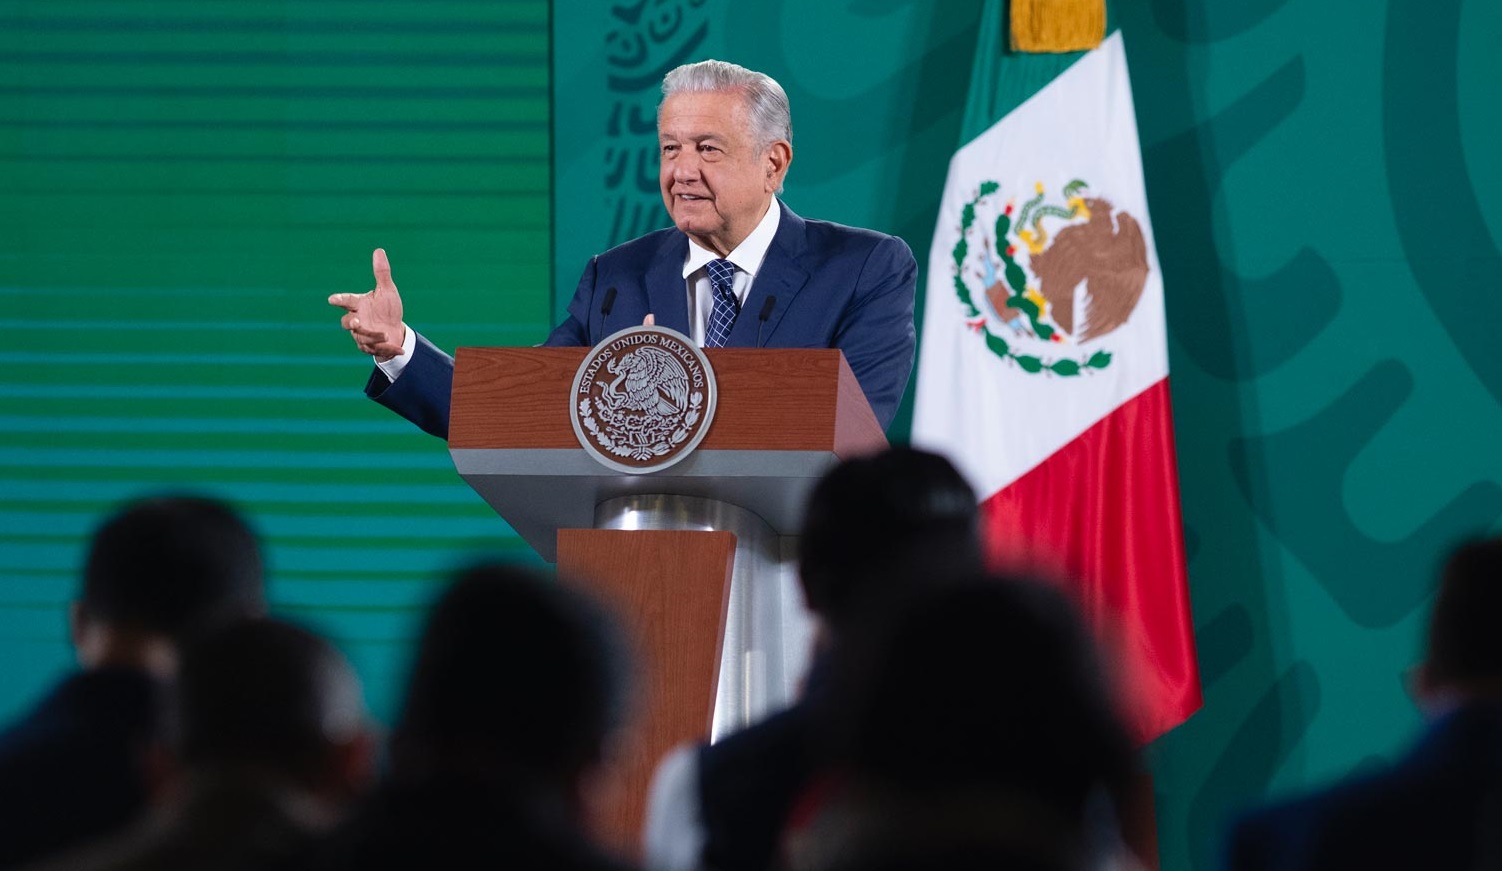 Presupuesto para 2022 beneficiara al pueblo e impulsara transformacion asegura Lopez Obrador